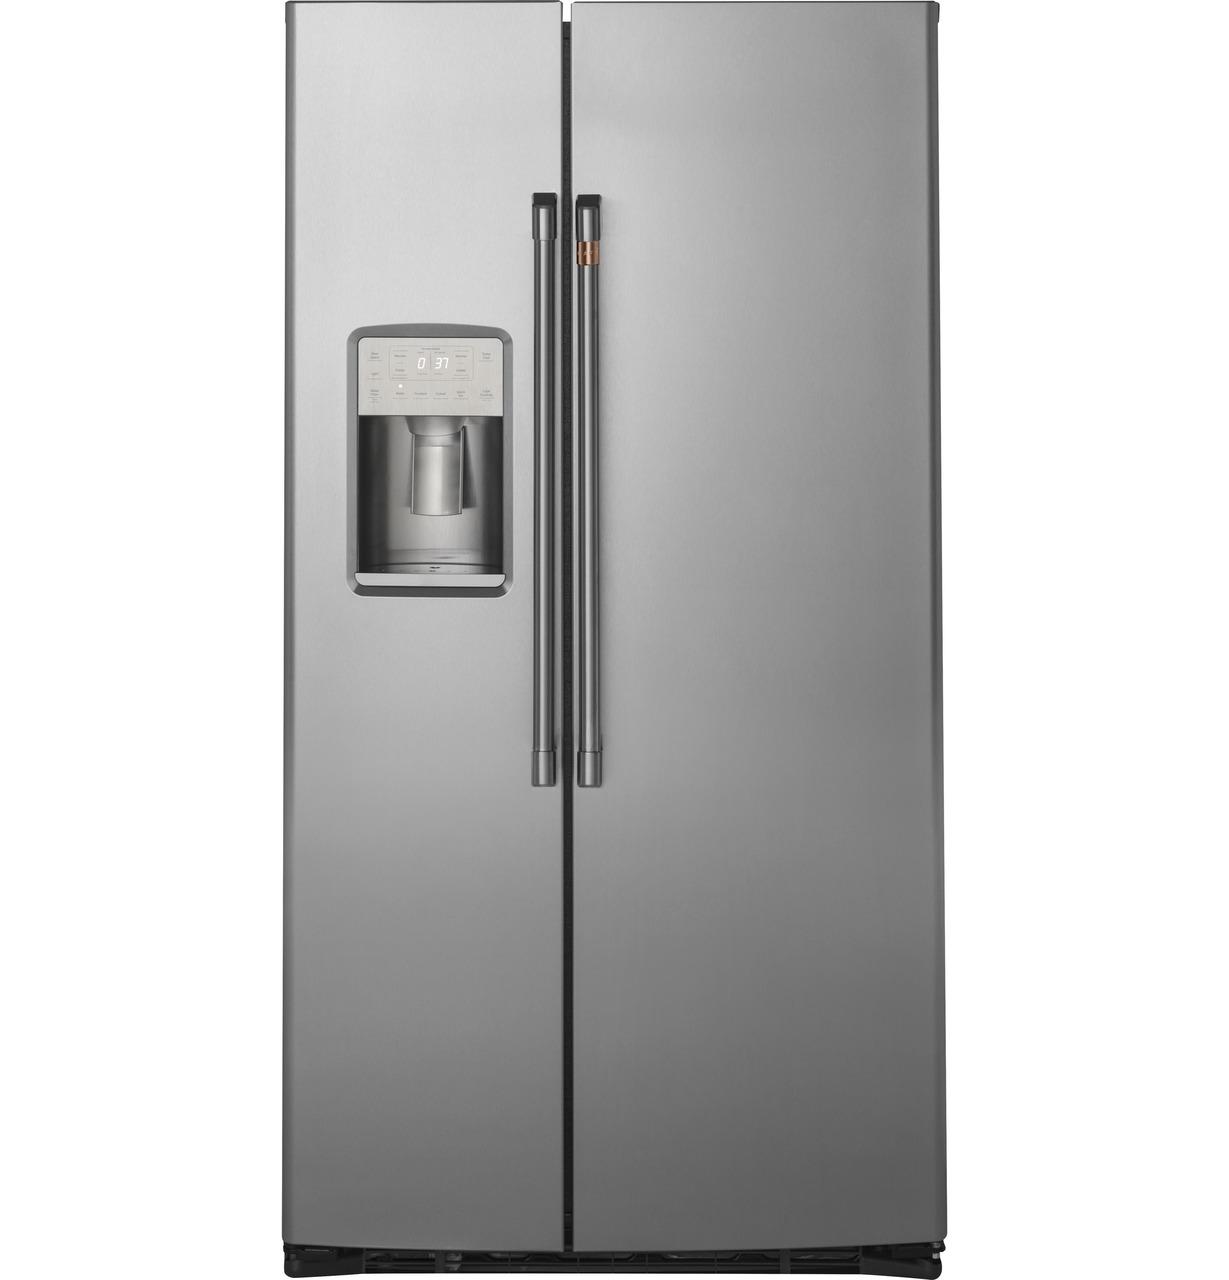 Cafe Caf(eback)™ 21.9 Cu. Ft. Counter-Depth Side-By-Side Refrigerator